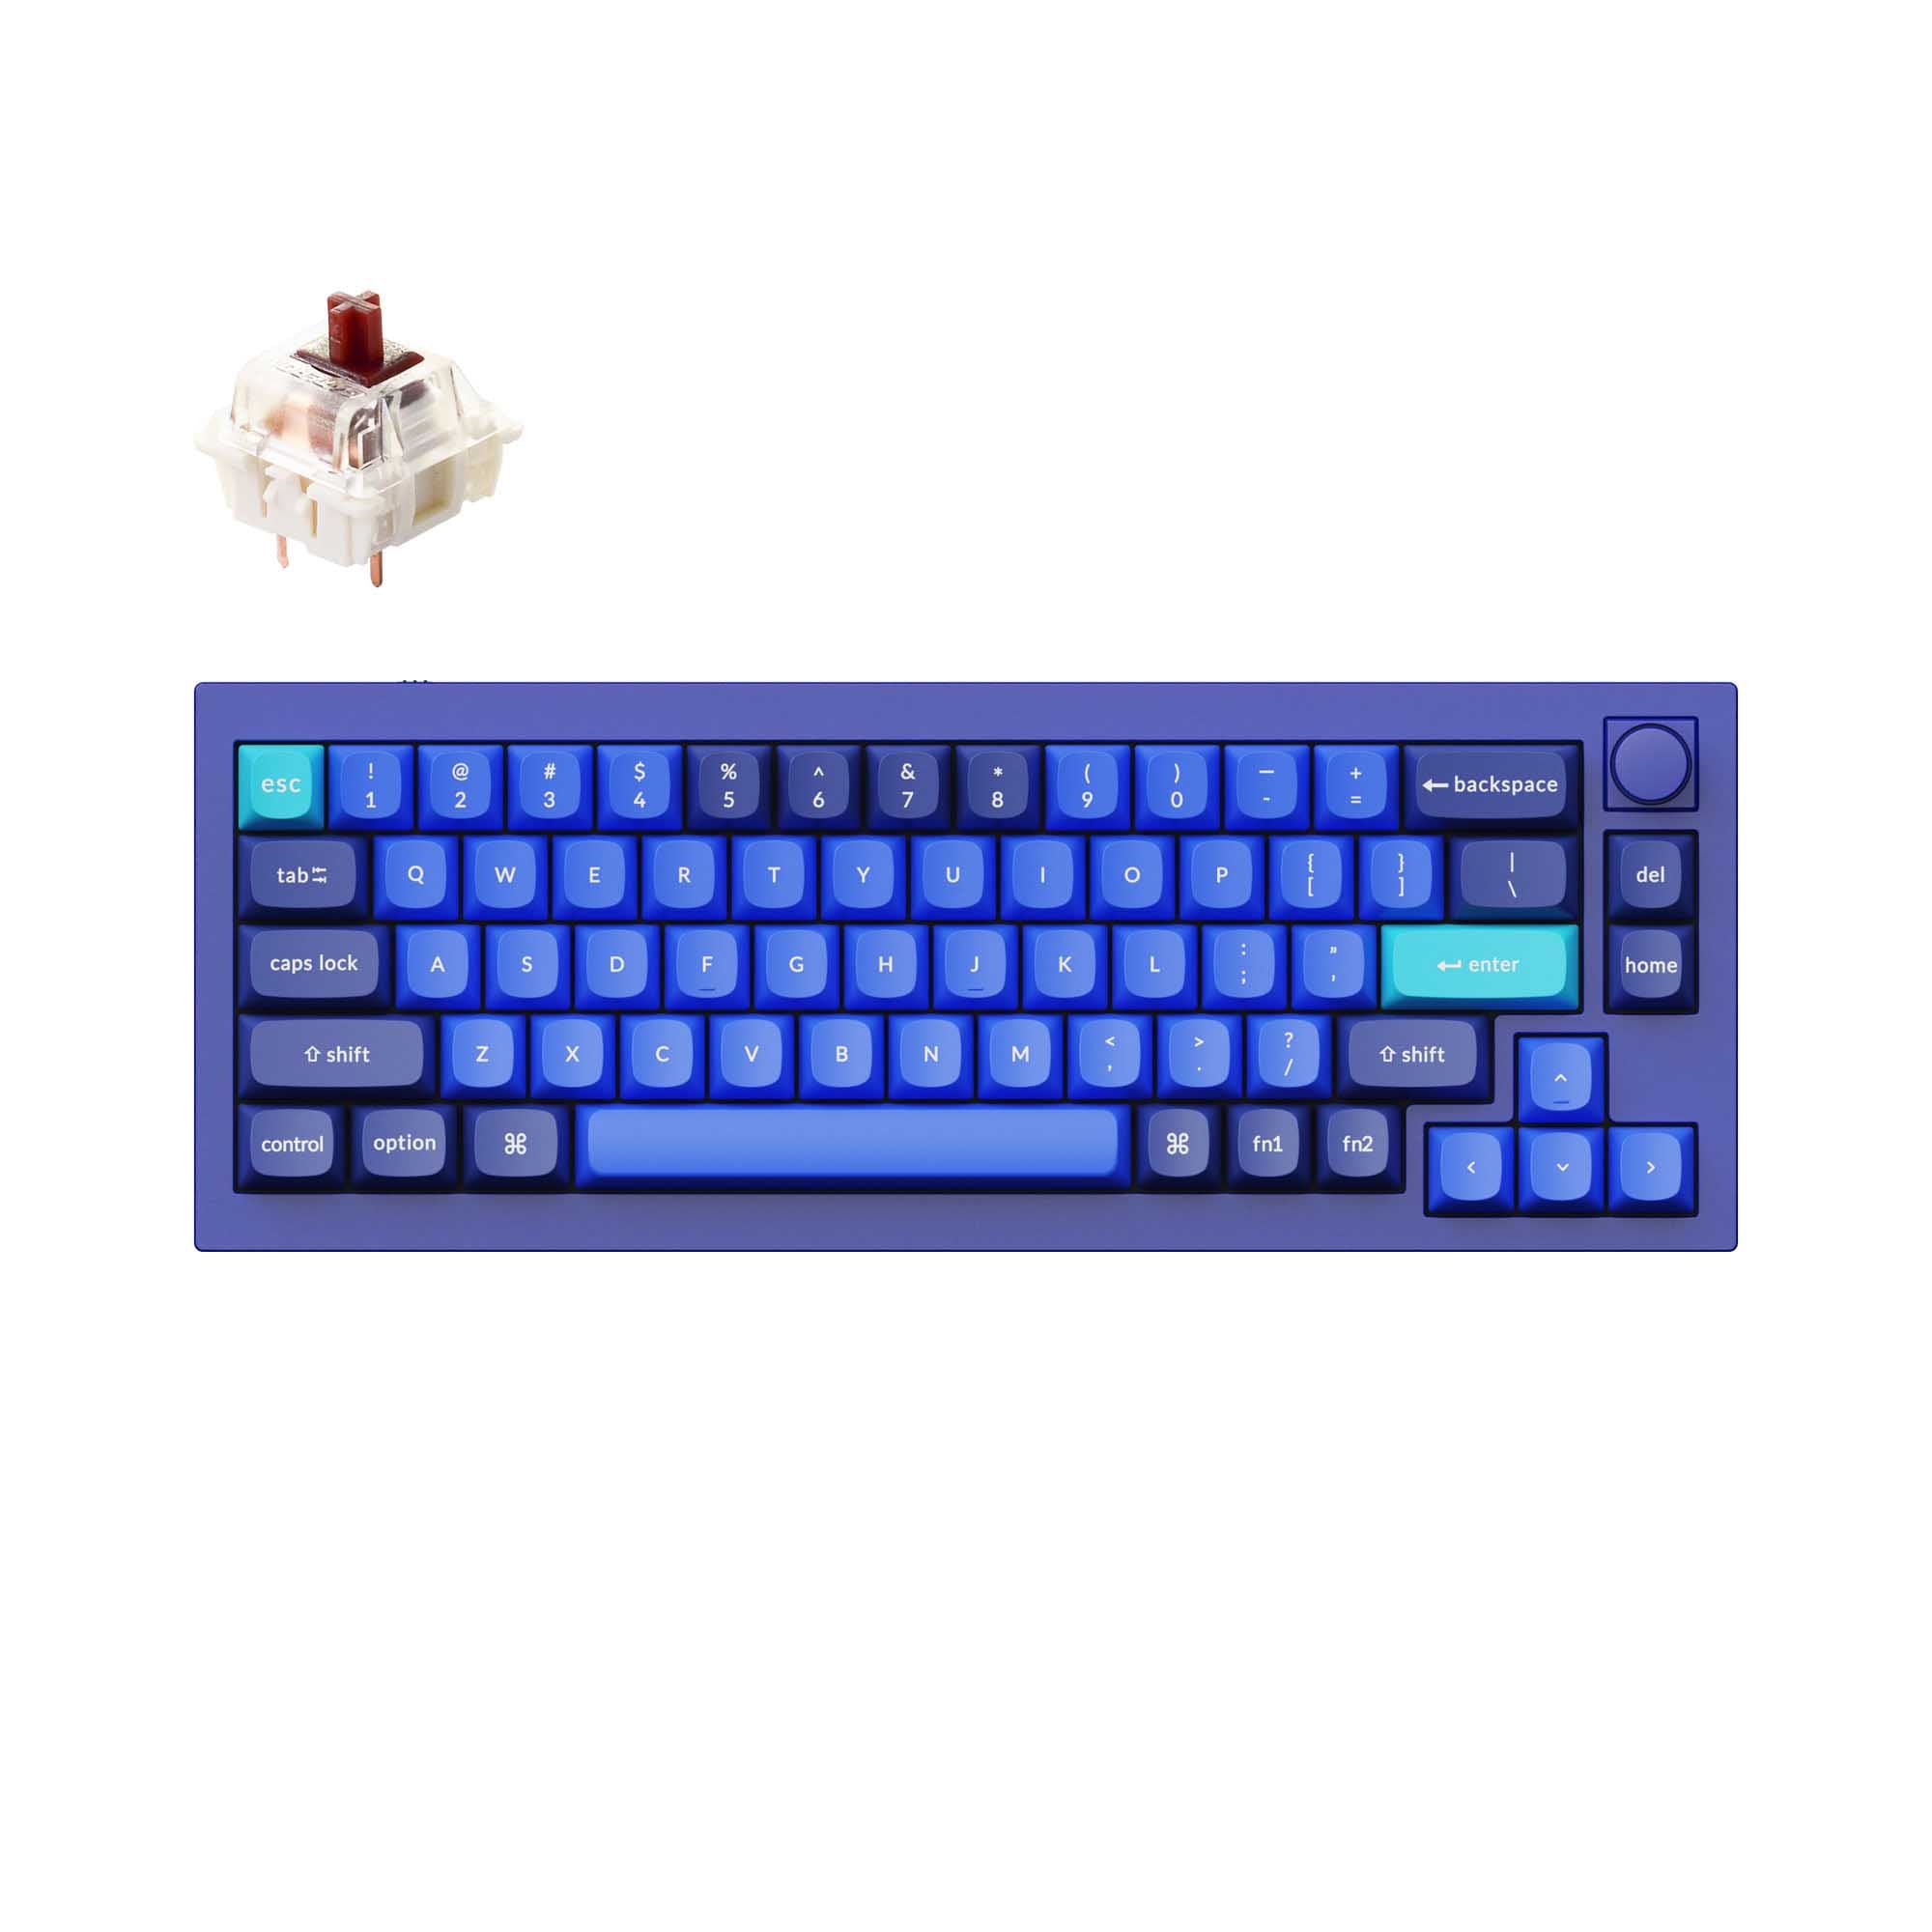 Keychron Q2 QMK Custom Mechanical Keyboard